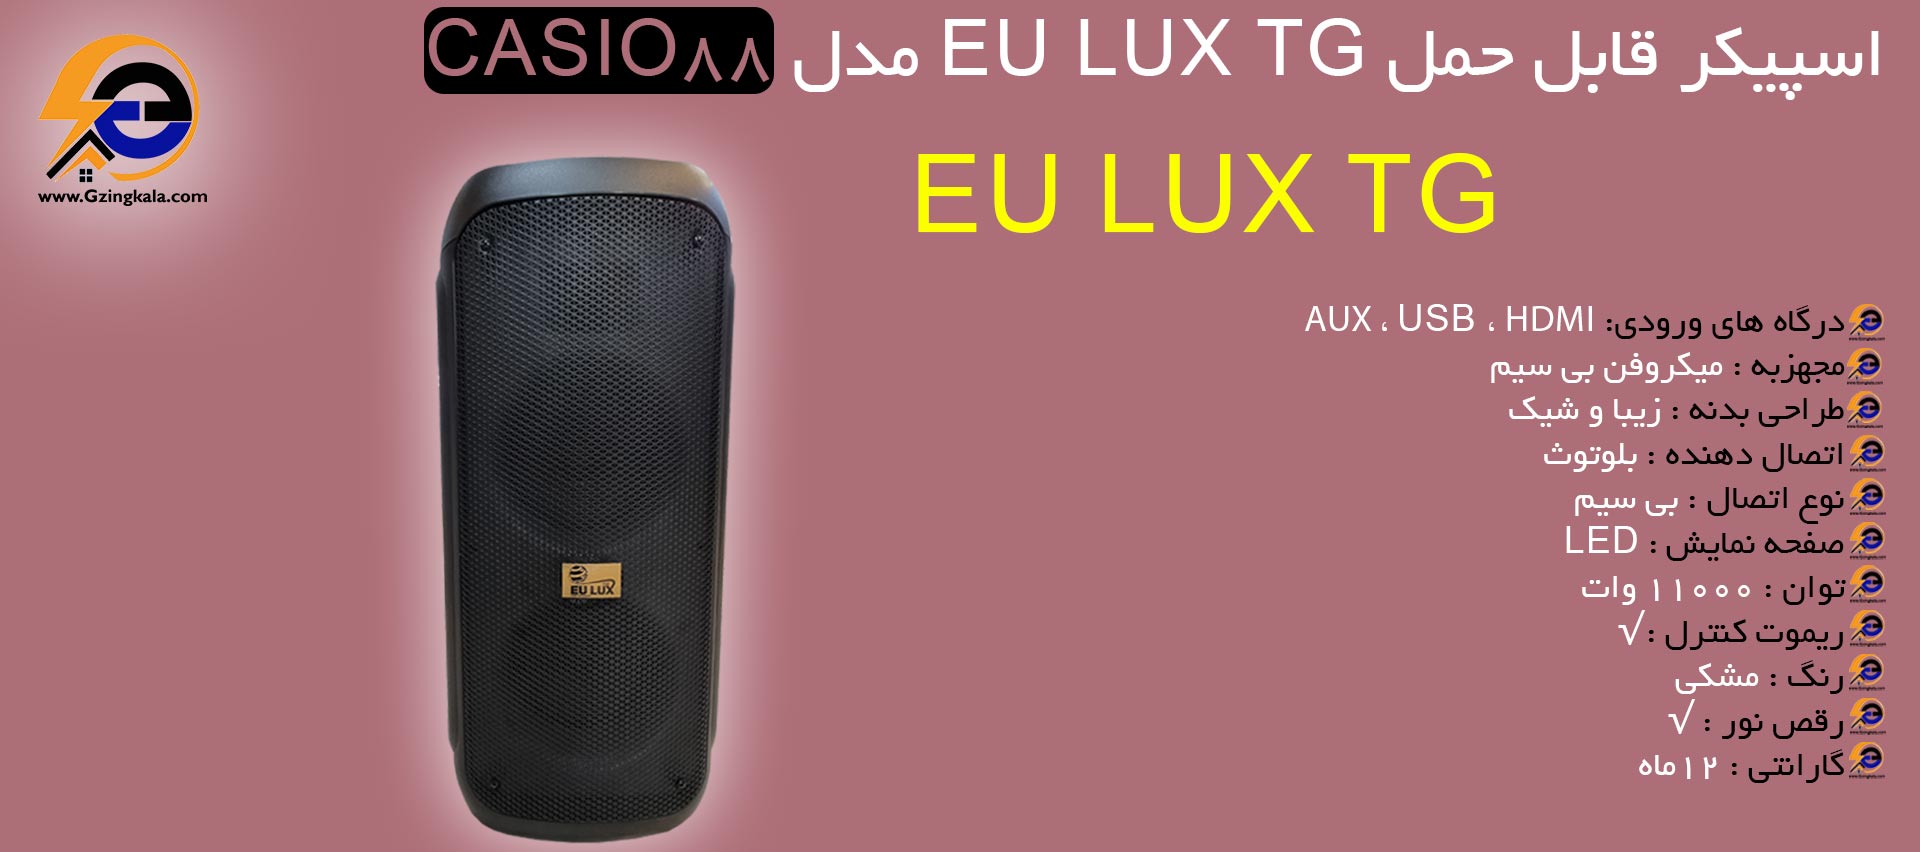 اسپیکر قابل حمل EU LUX TG مدل CASIO88